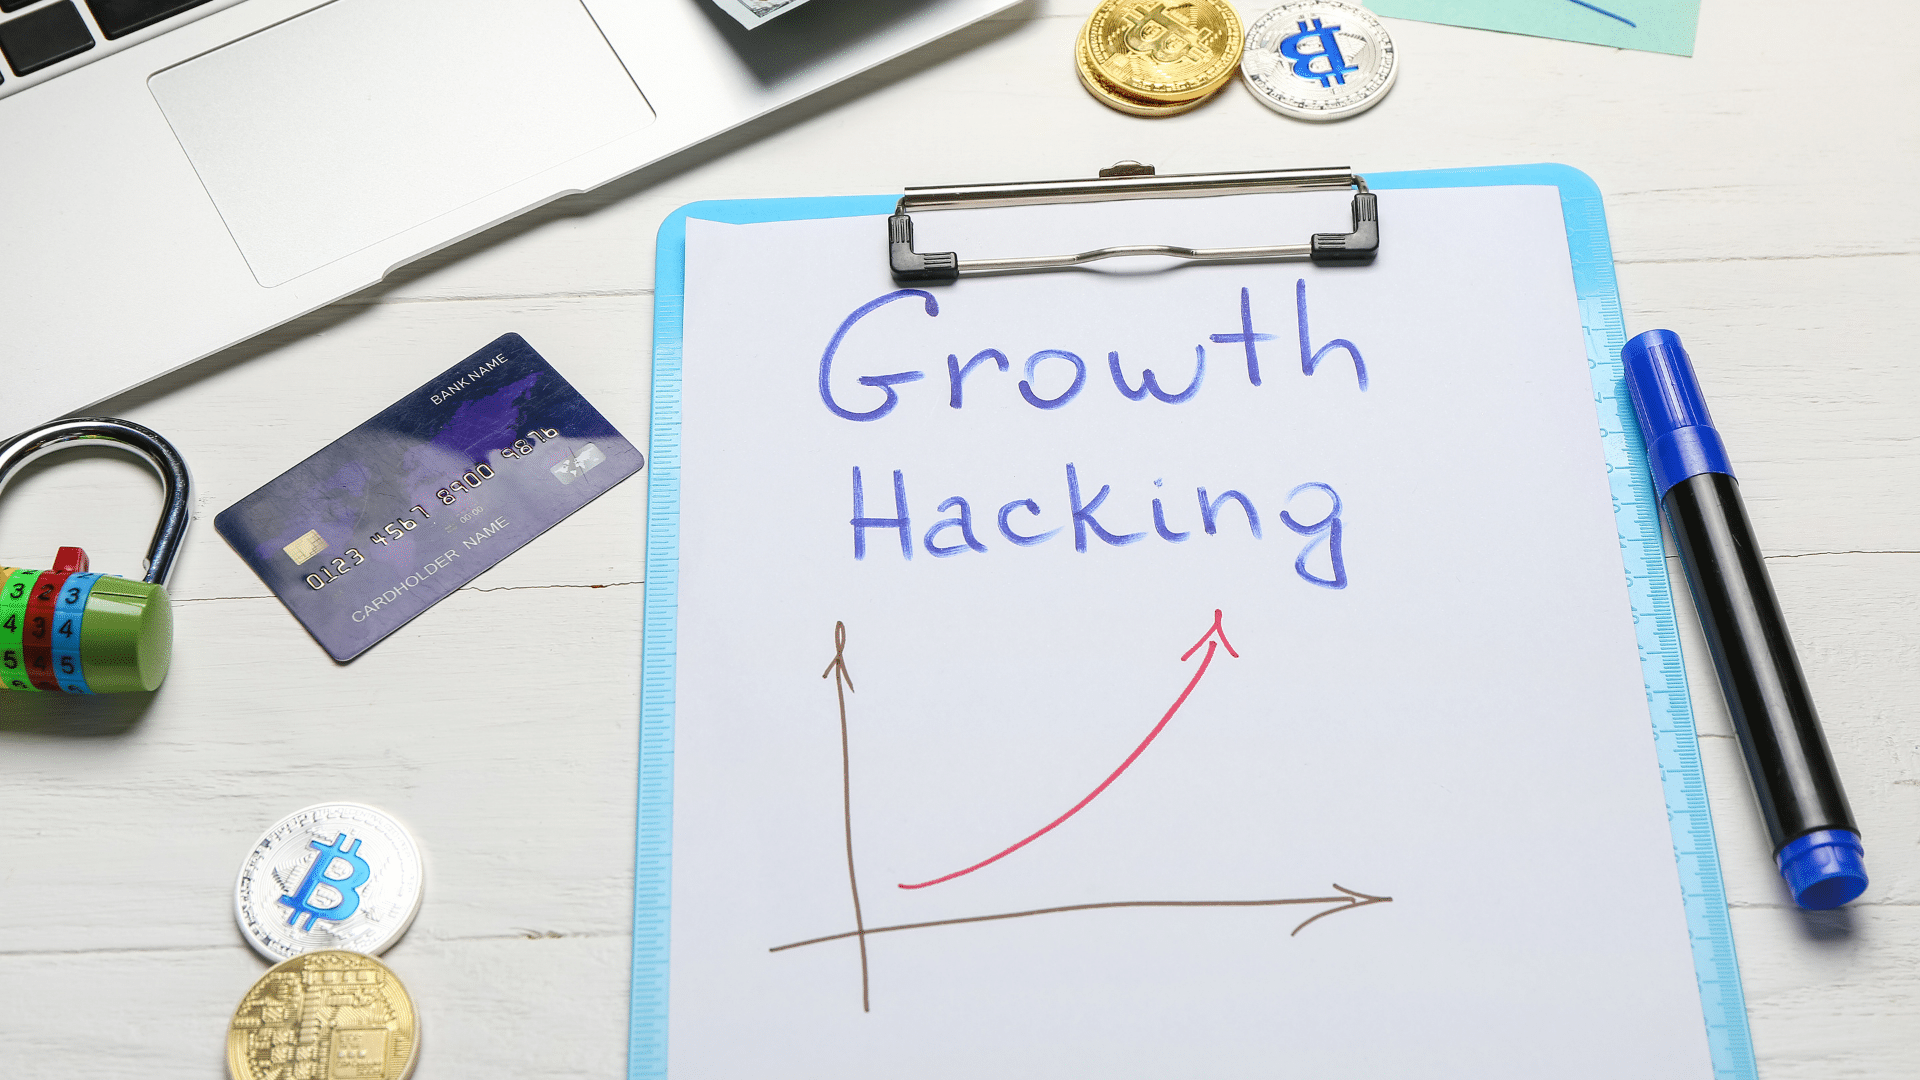 Les techniques de Growth Hacking